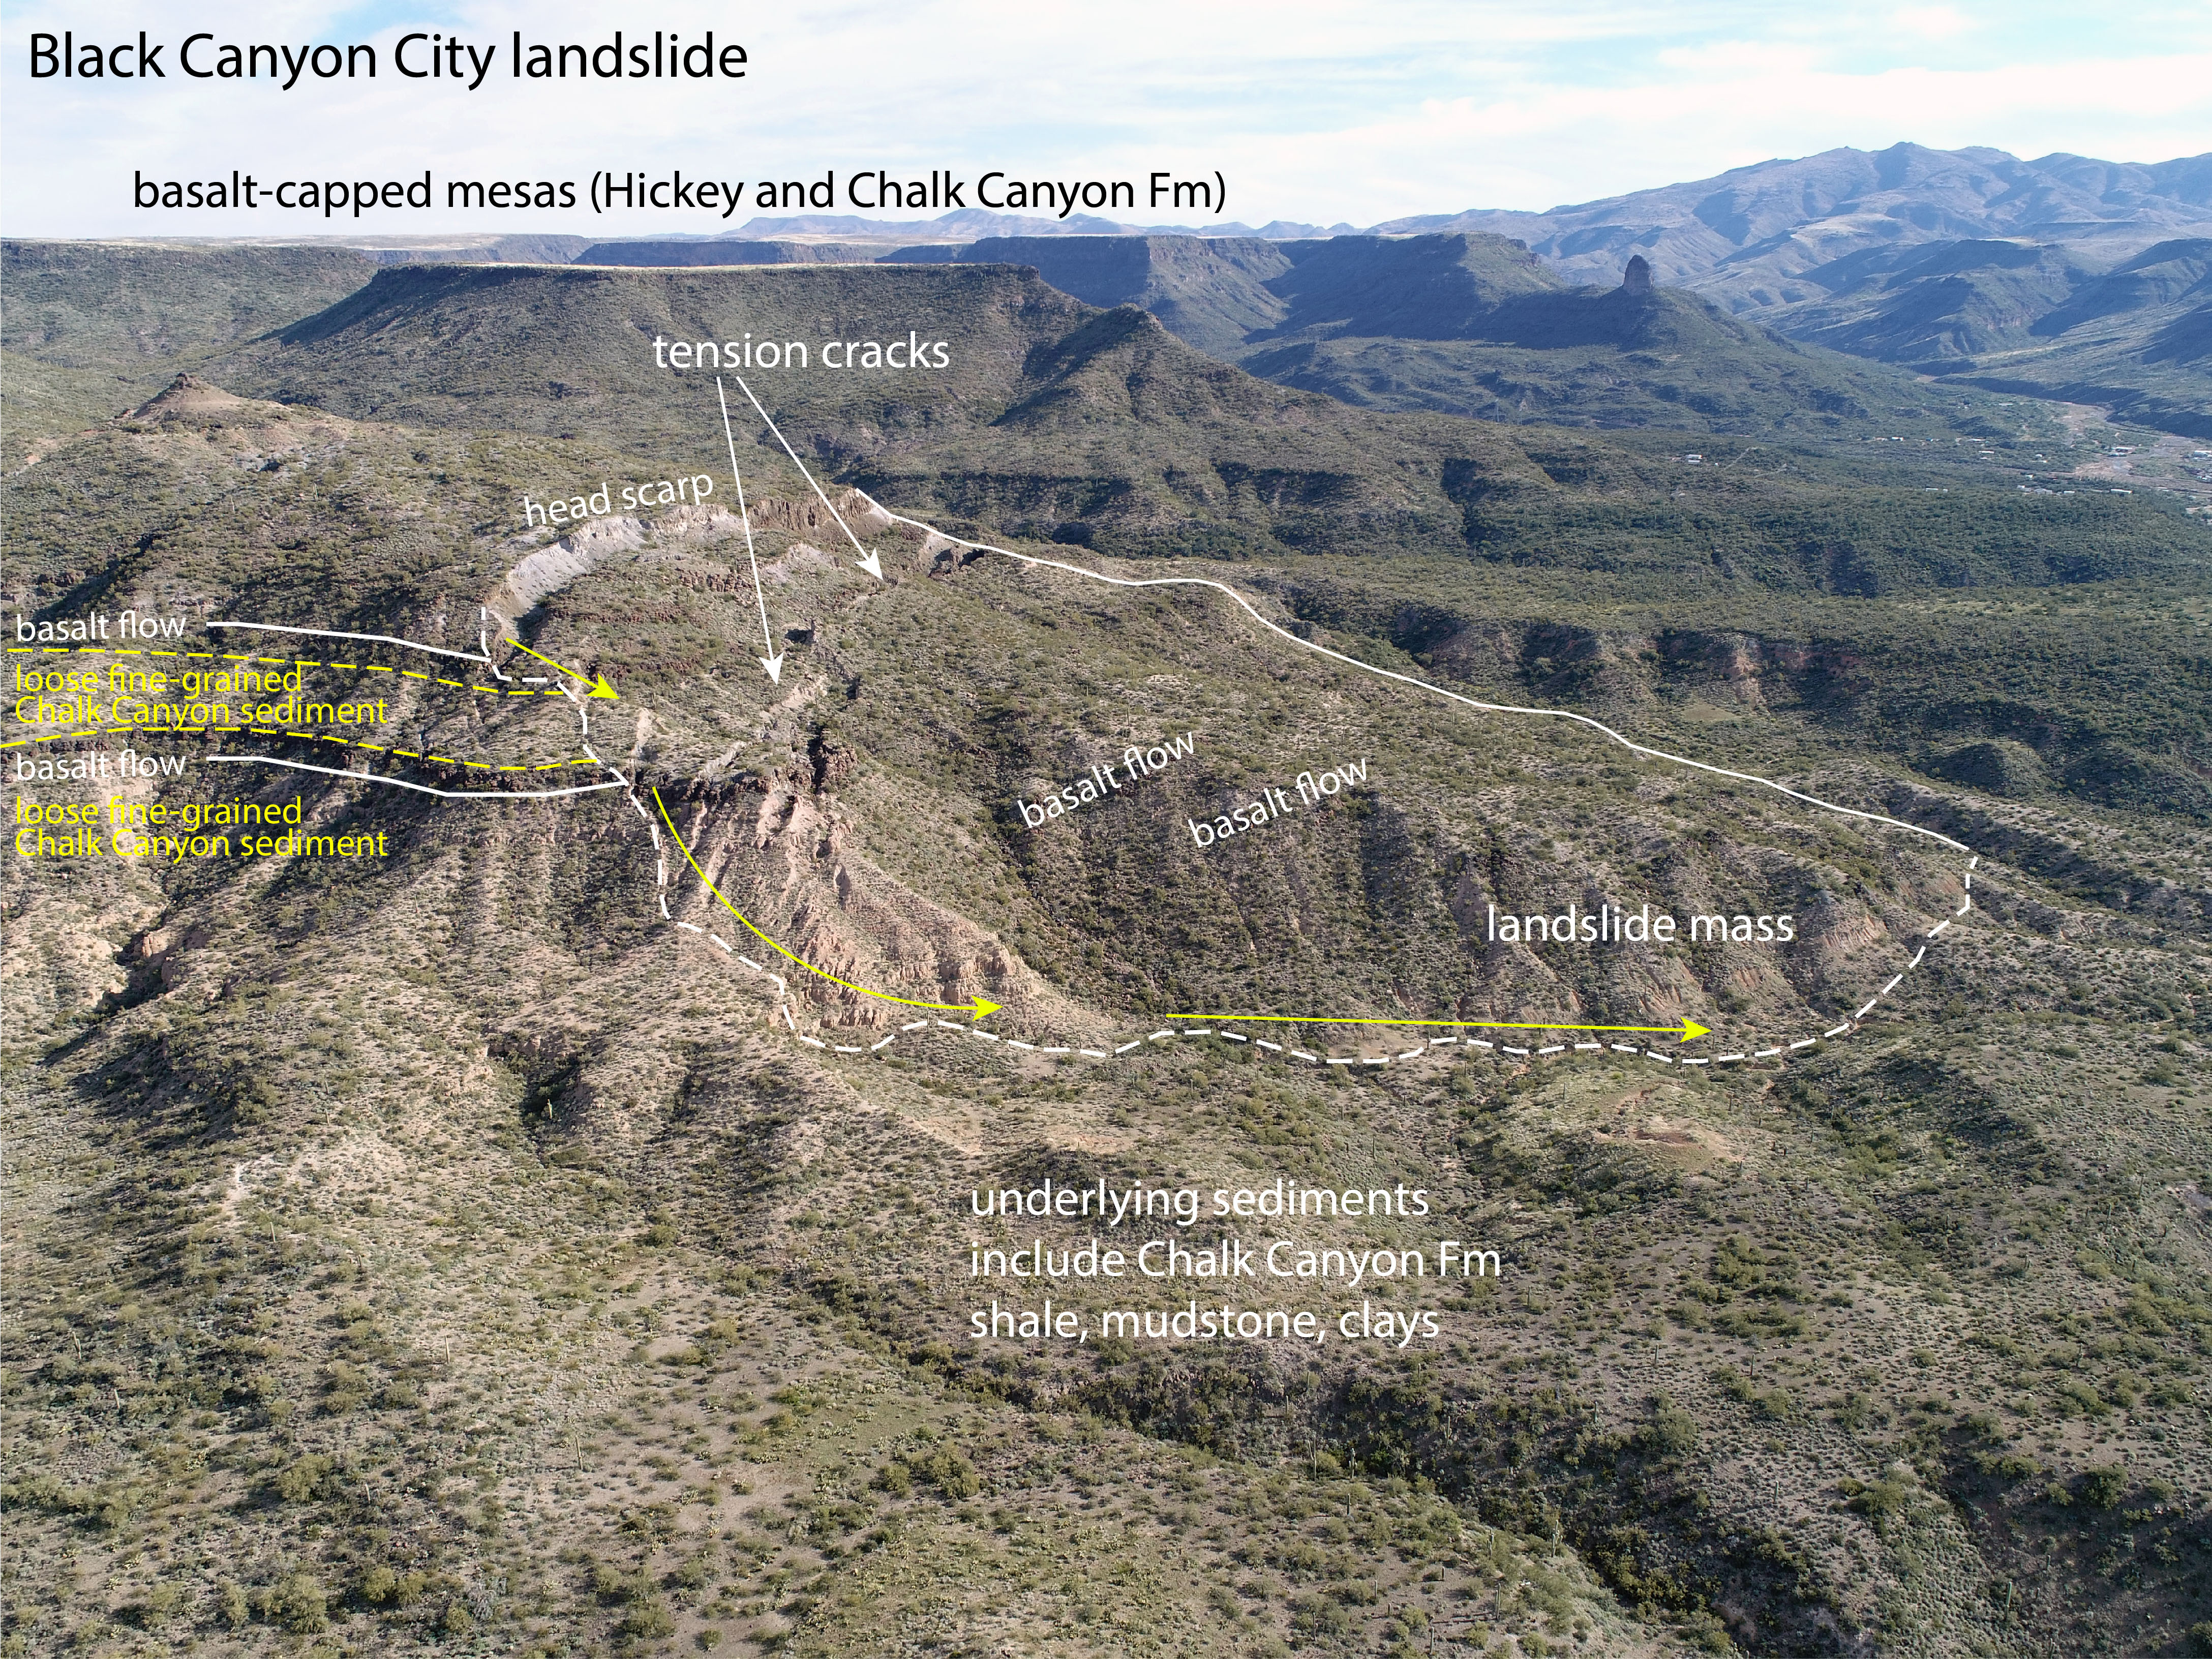 Black Canyon City Landslide